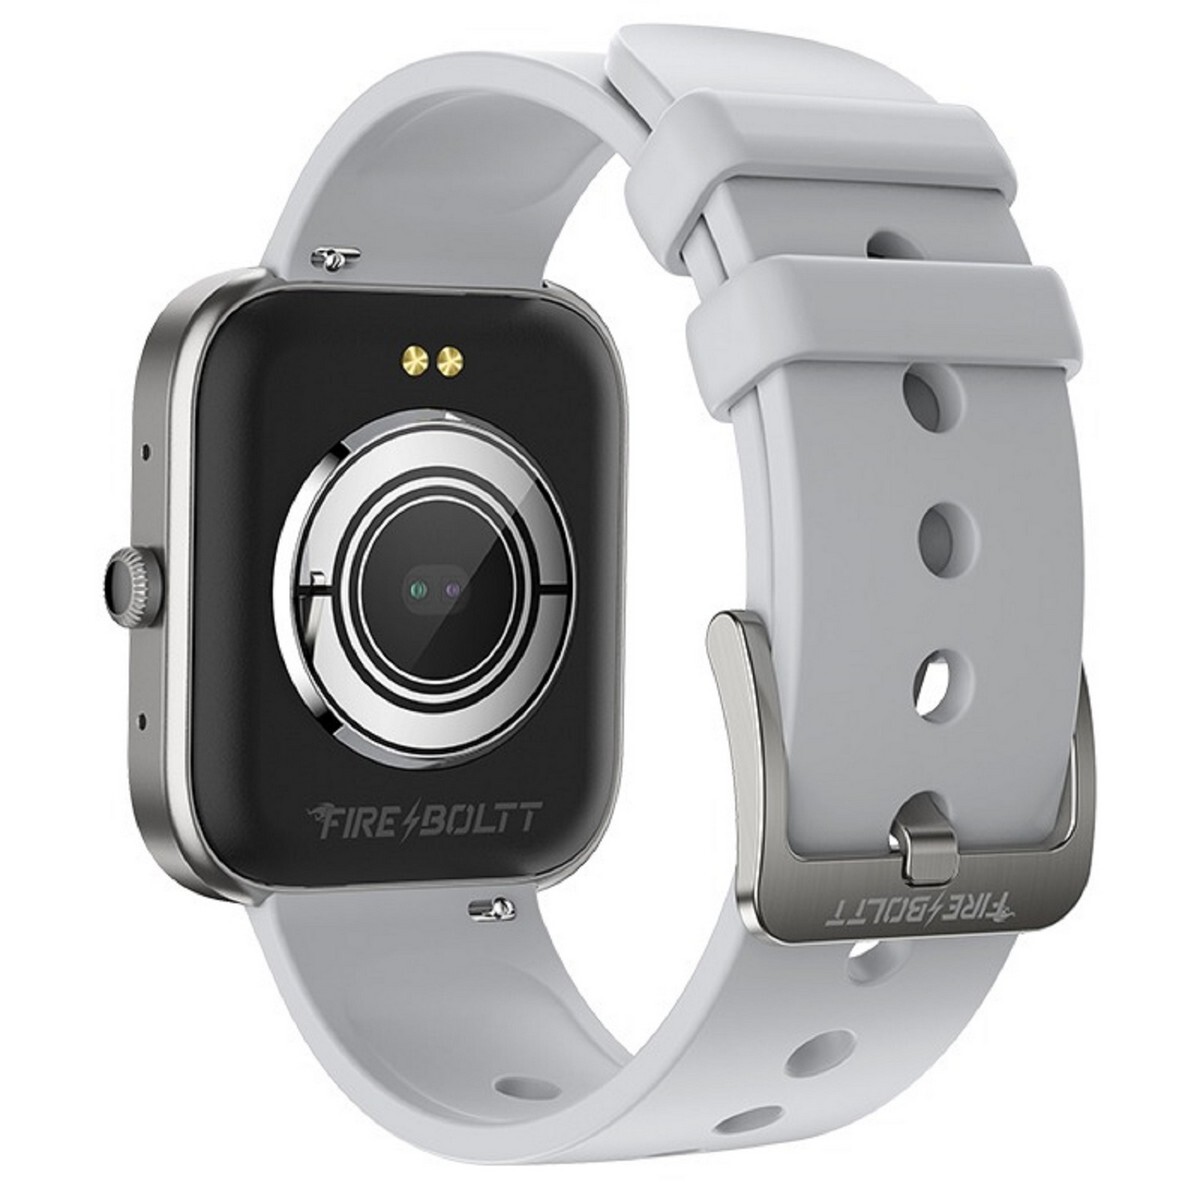 FireBoltt Smart Watch Jaguar BSW068 Grey